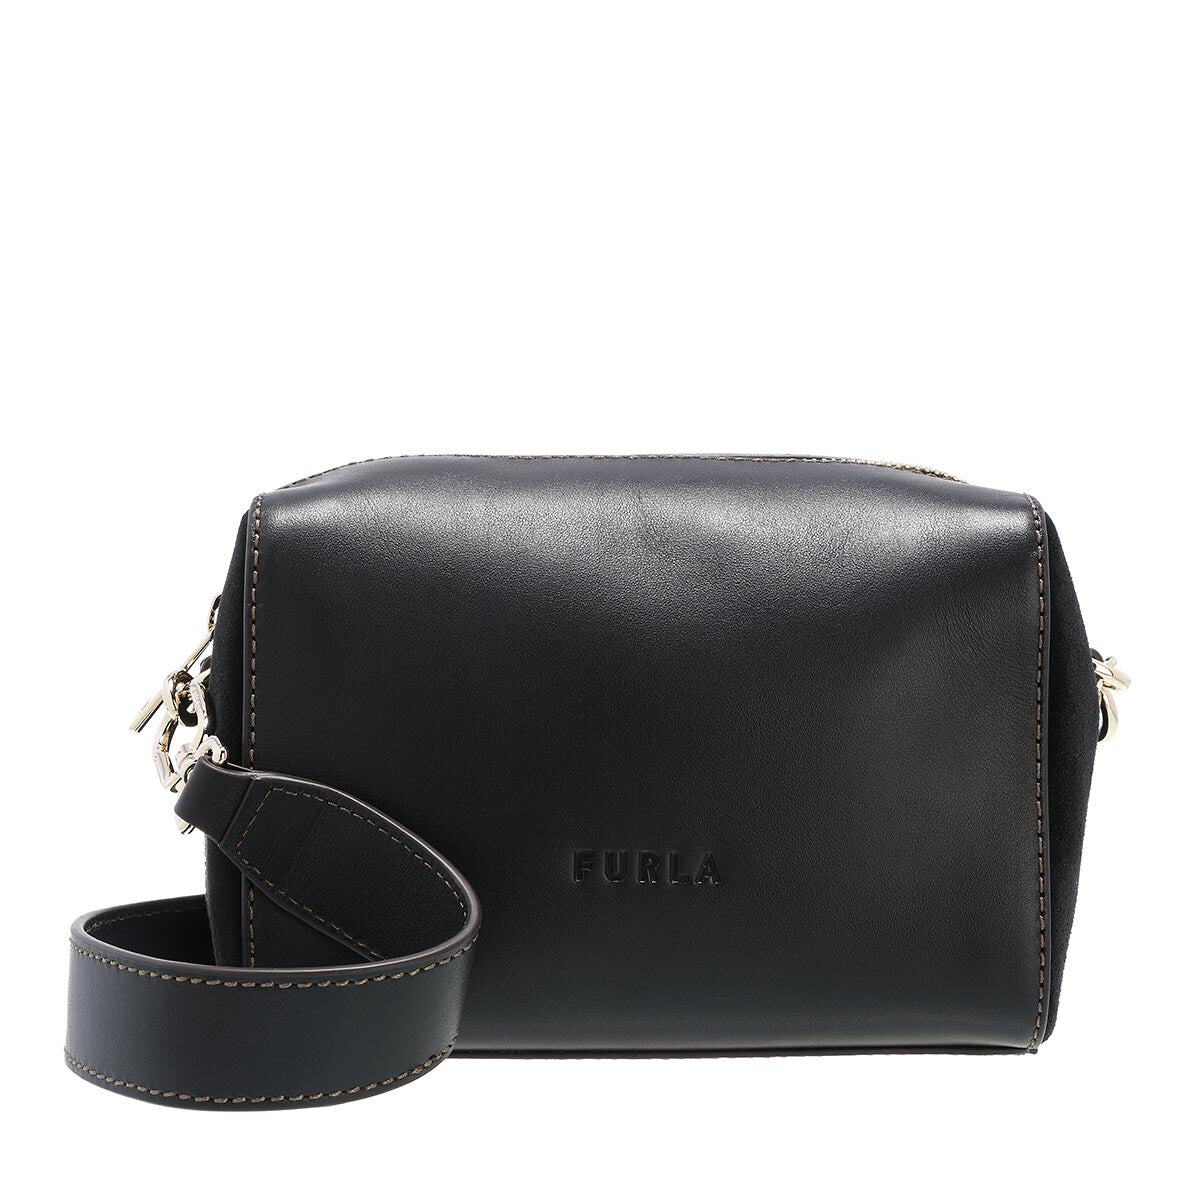 FURLA Leather 2way Shoulder Bag Black  PLAYFUL